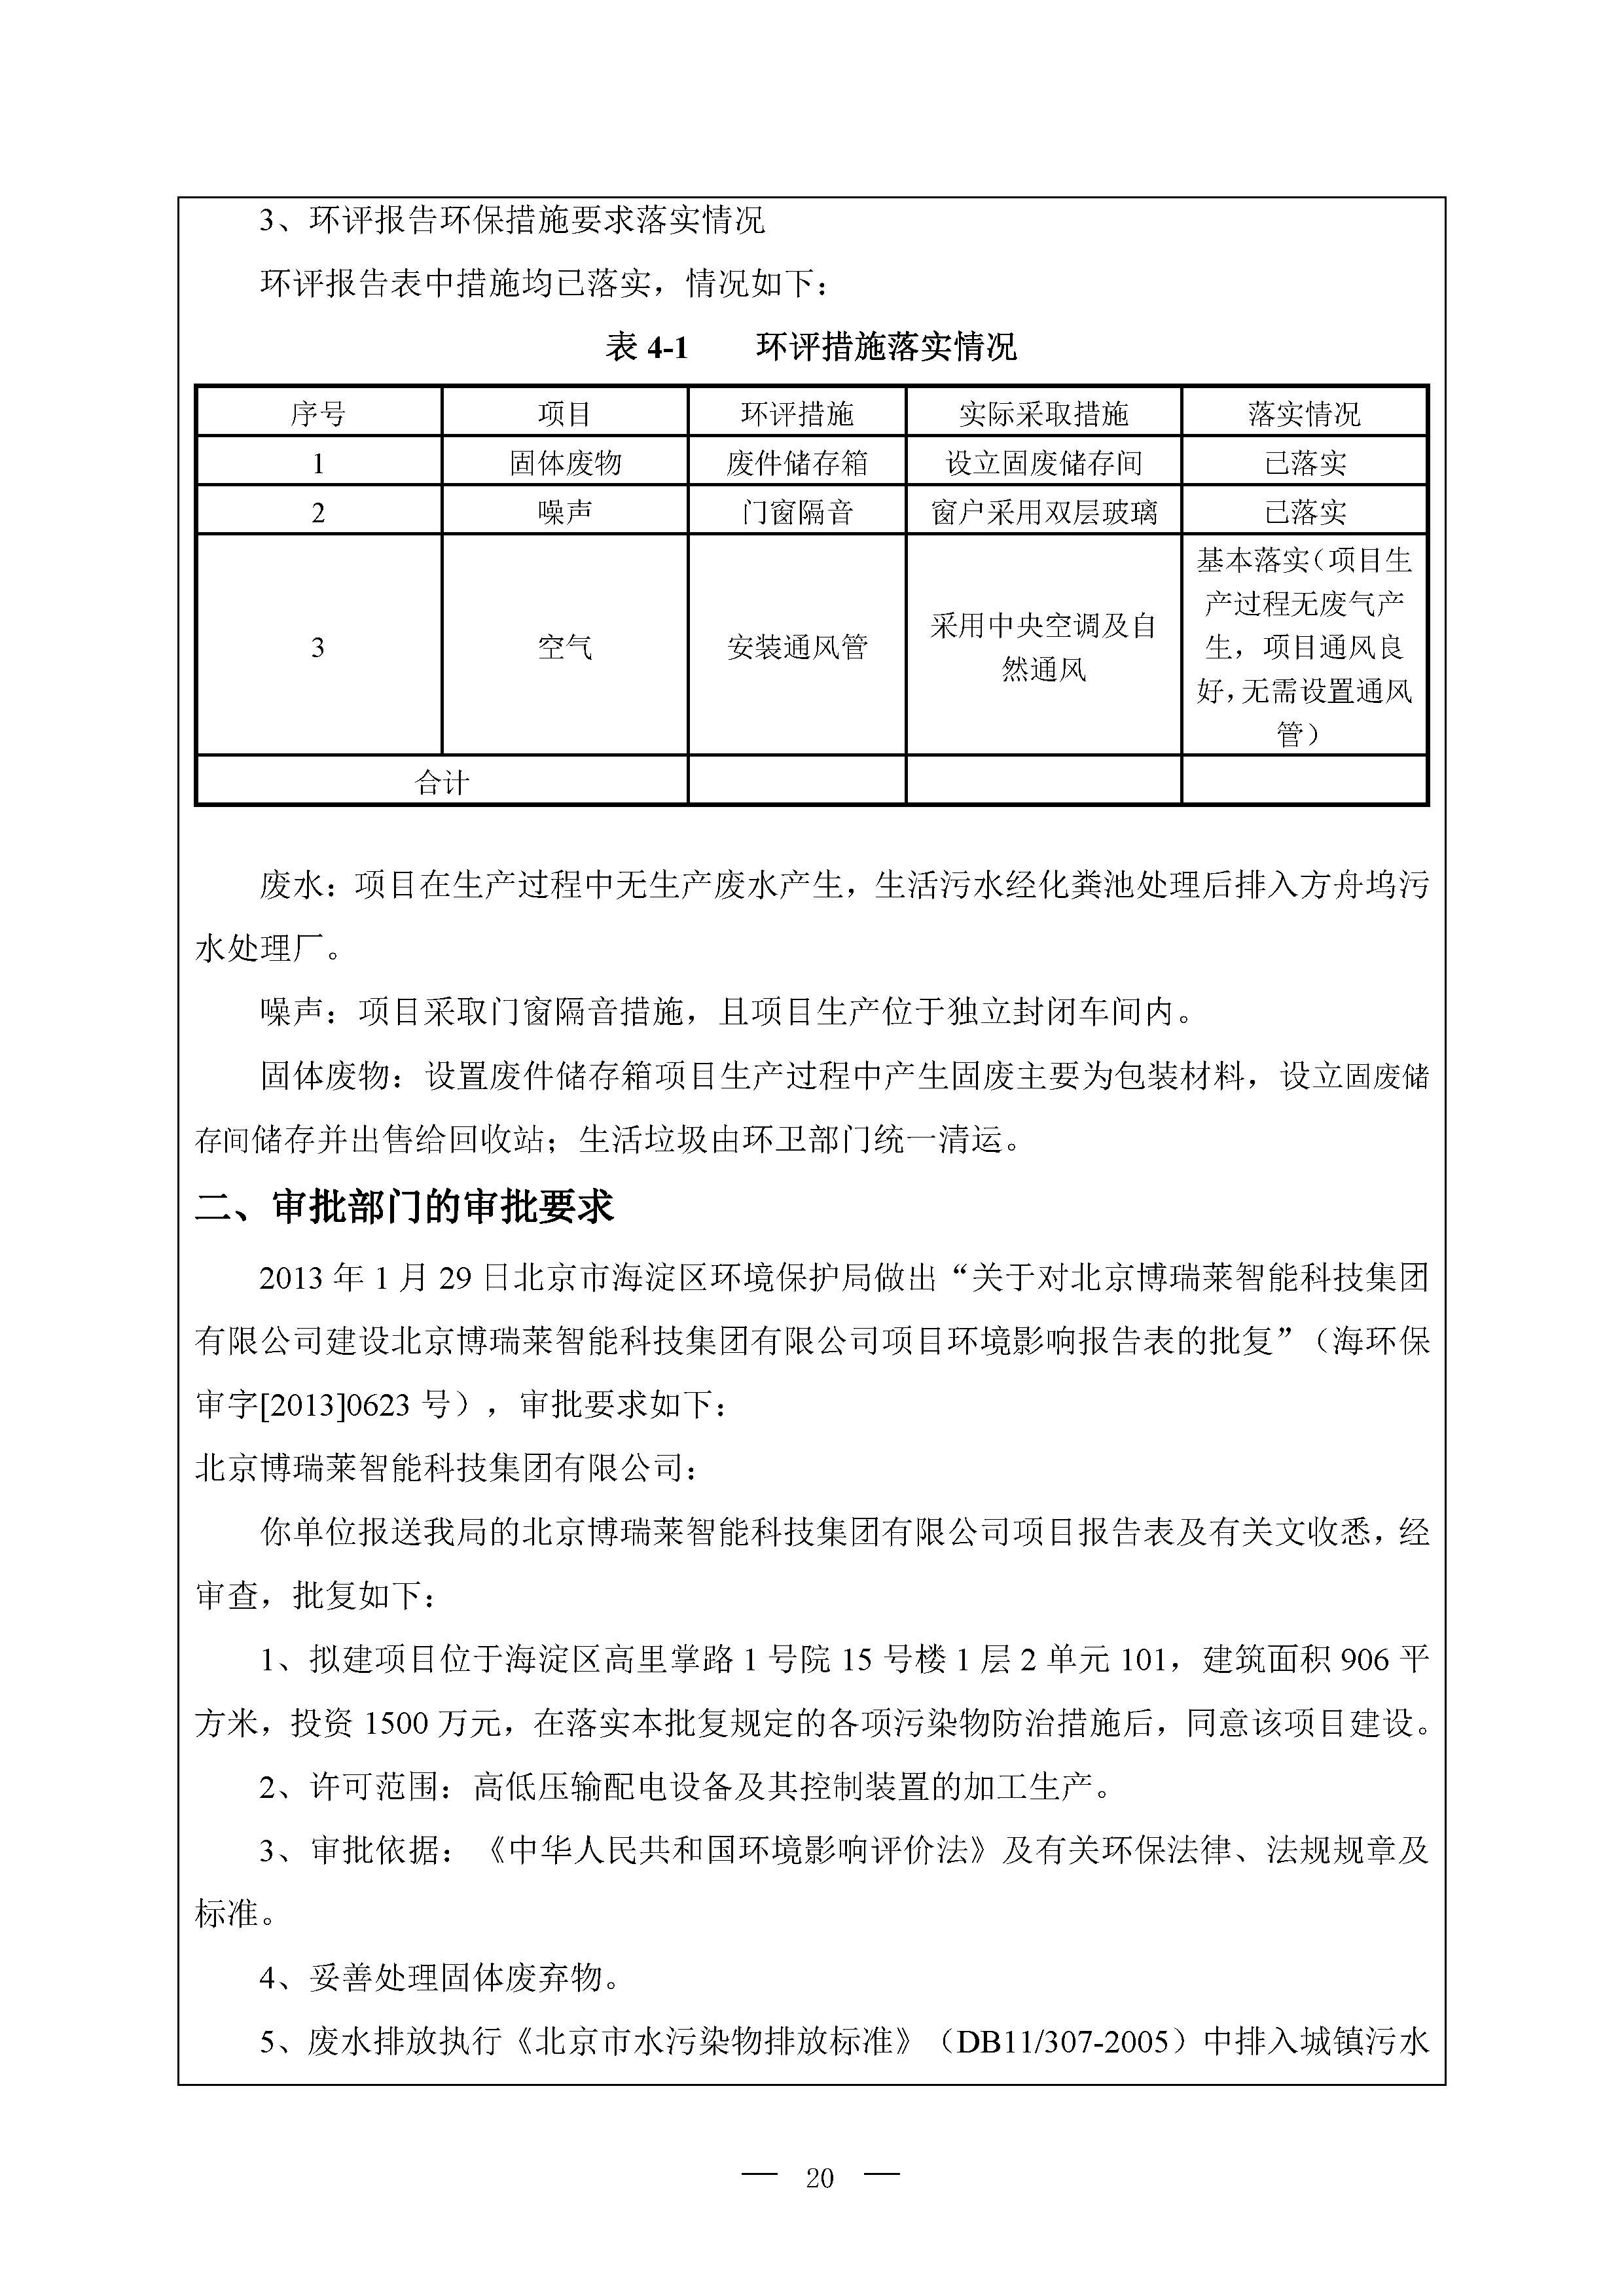 北京博瑞莱智能科技集团有限公司项目竣工环境保护验收监测报告全本公示(图24)